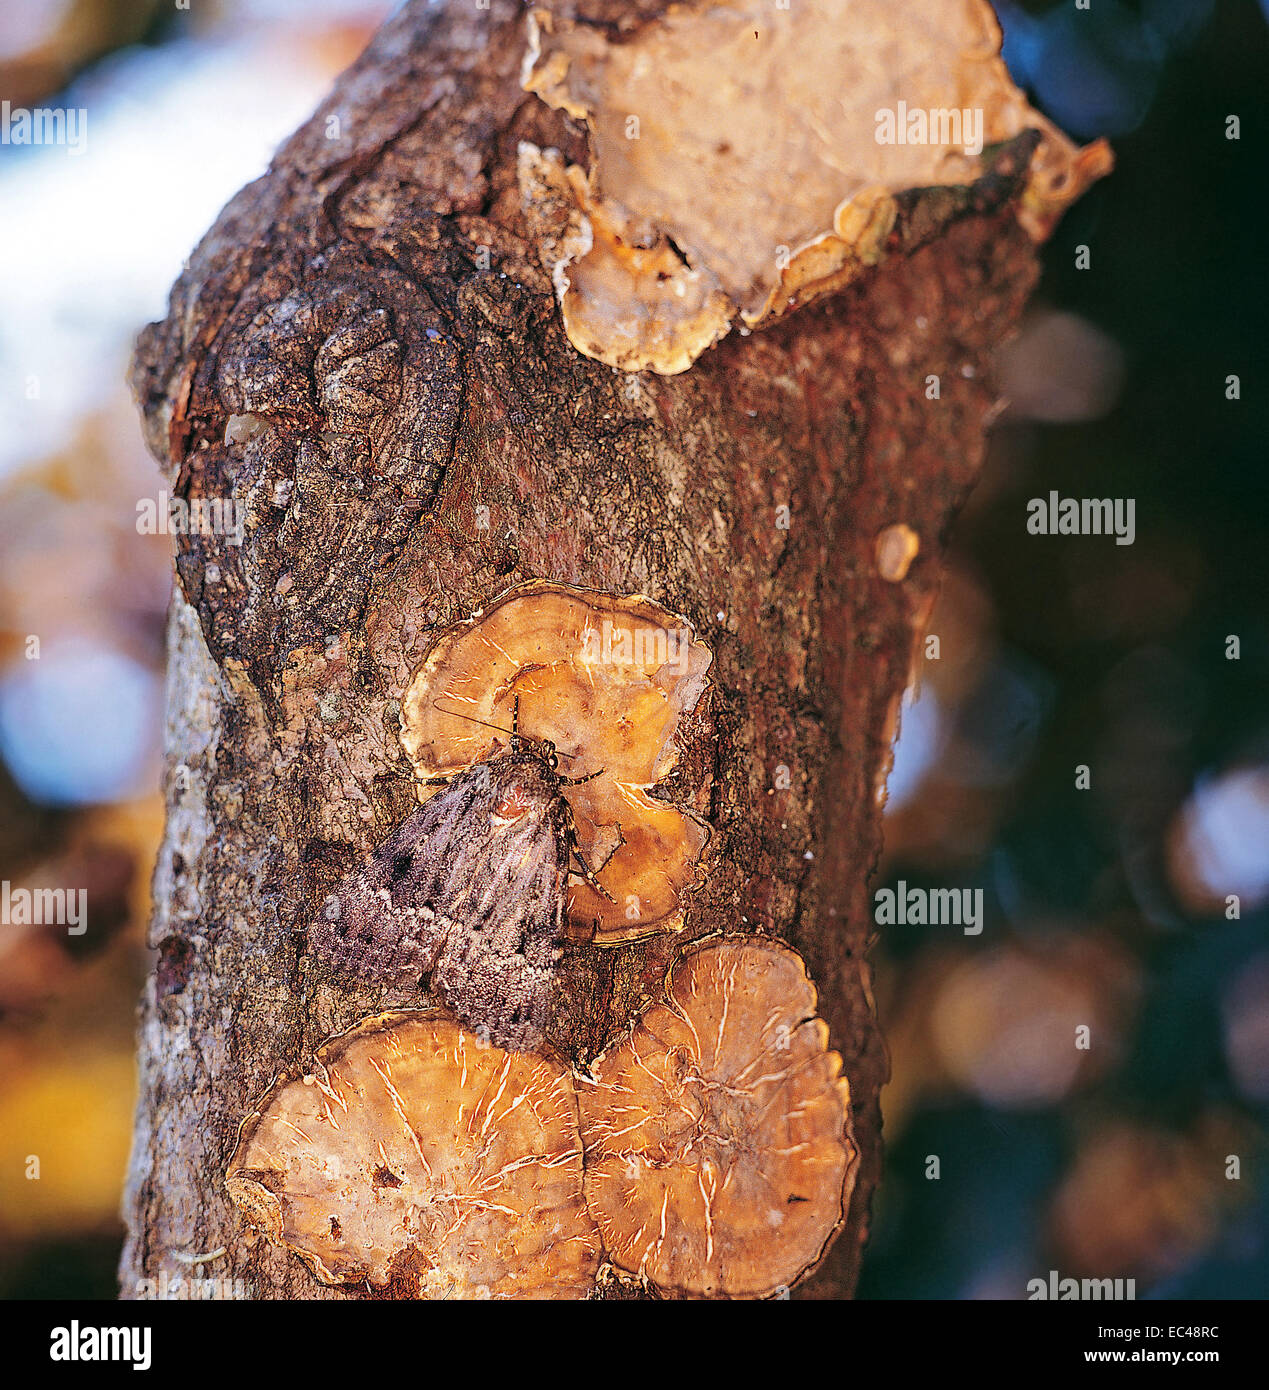 Mimetismo - Svensson del cobre (polilla subalares Amphipyra berbera) camuflado en corteza de árbol con líquenes Foto de stock